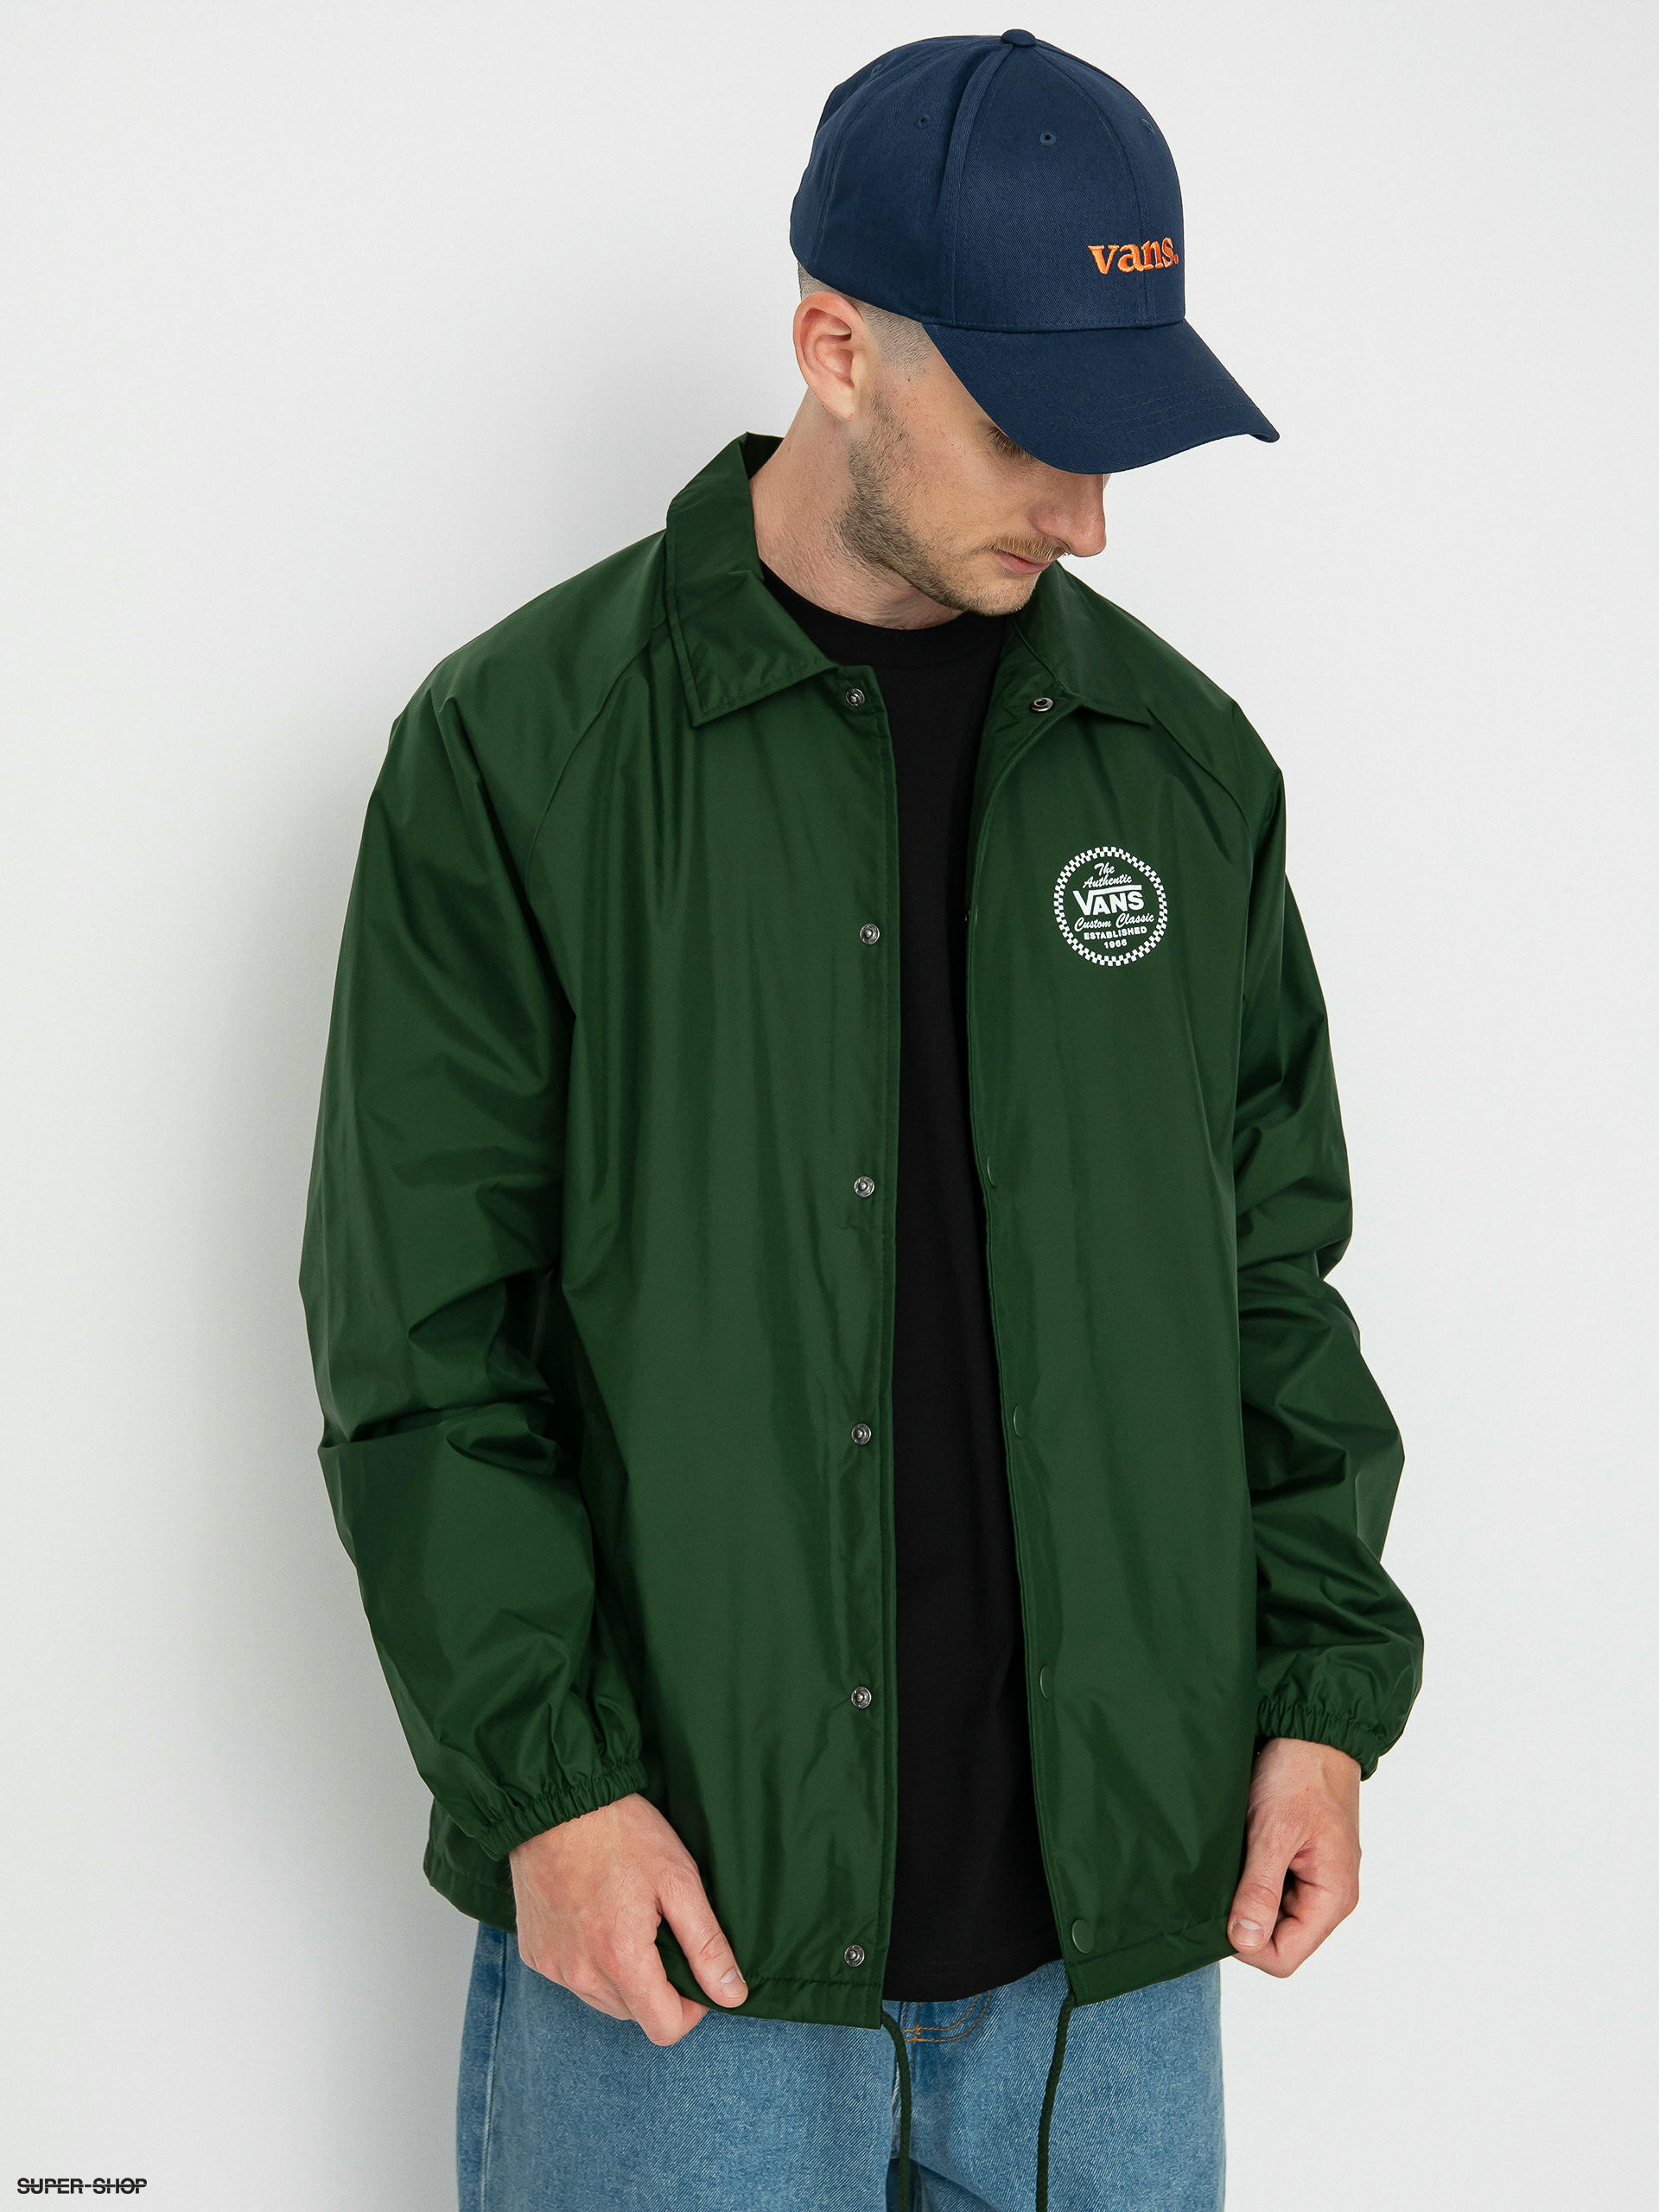 Vans Torrey jacket in green Exclusive at ASOS